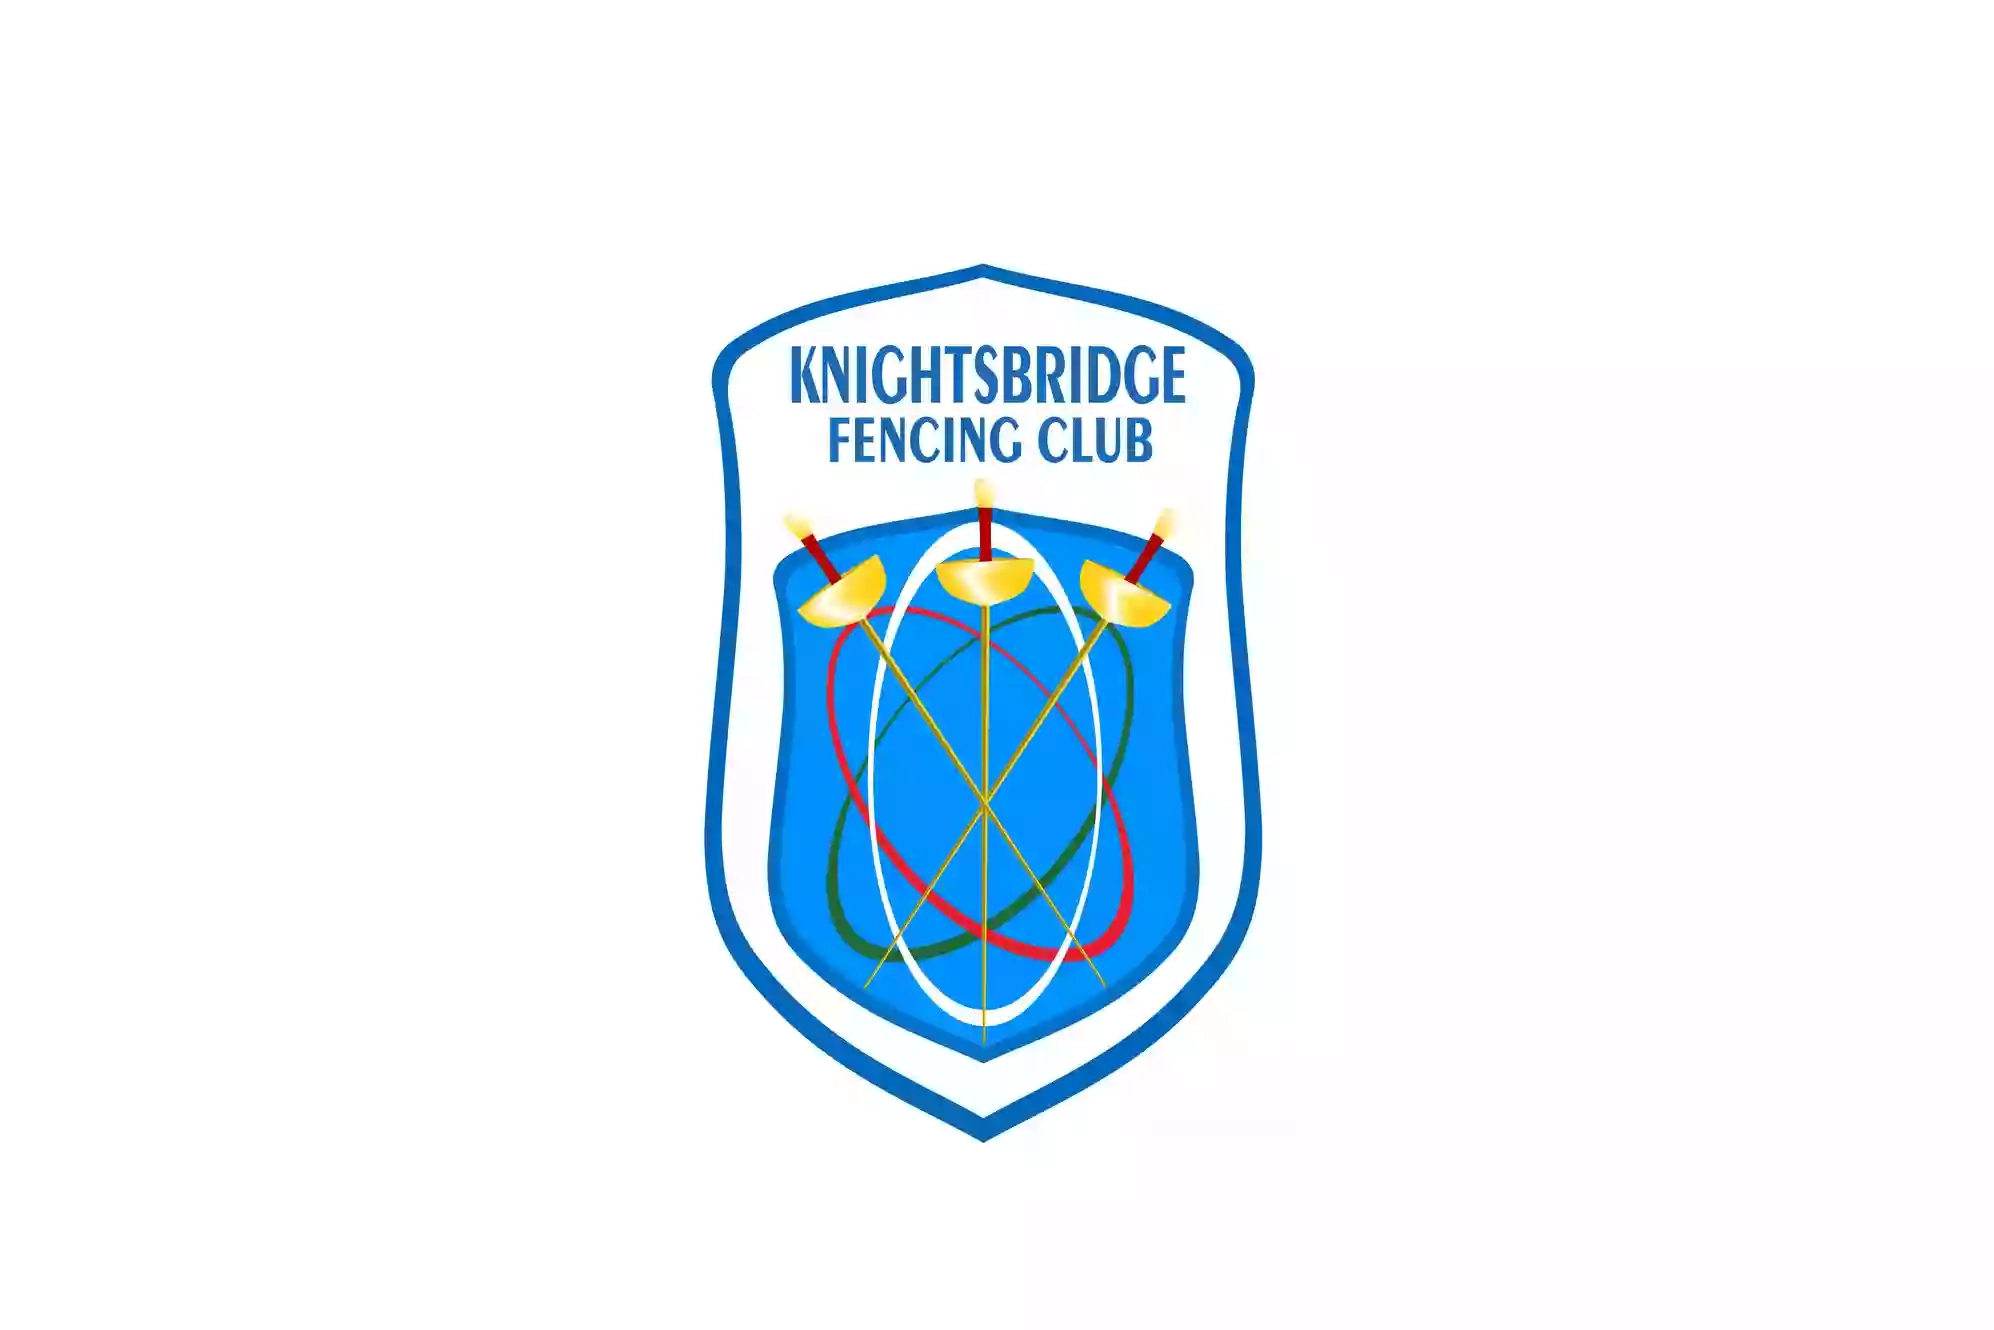 Knightsbridge Fencing Club